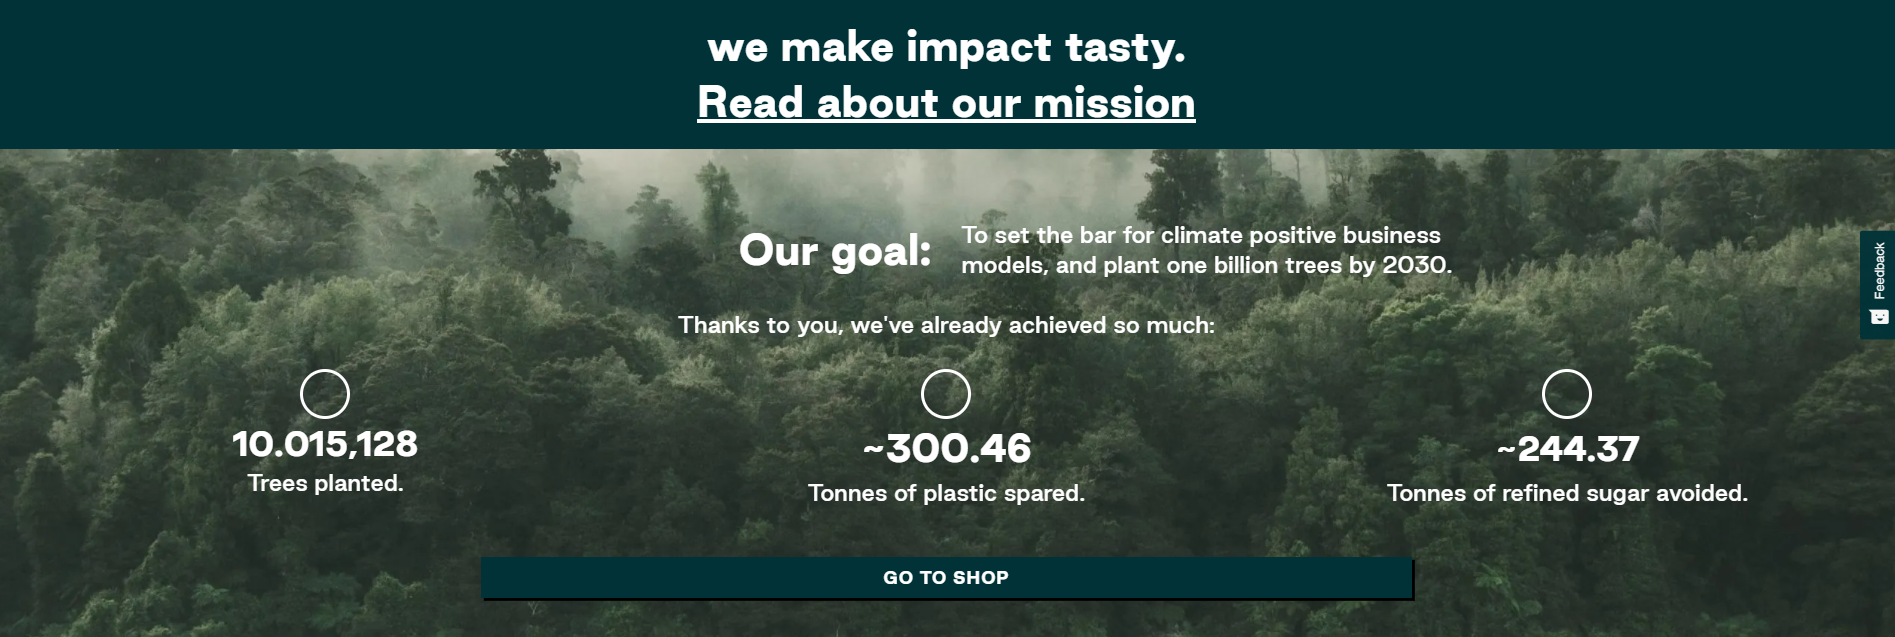 Nu Company: alberi piantati, 300 tonnellate di plastica risparmiate nel processo di packaging, 244 tonnellate di zucchero raffinato risparmiate